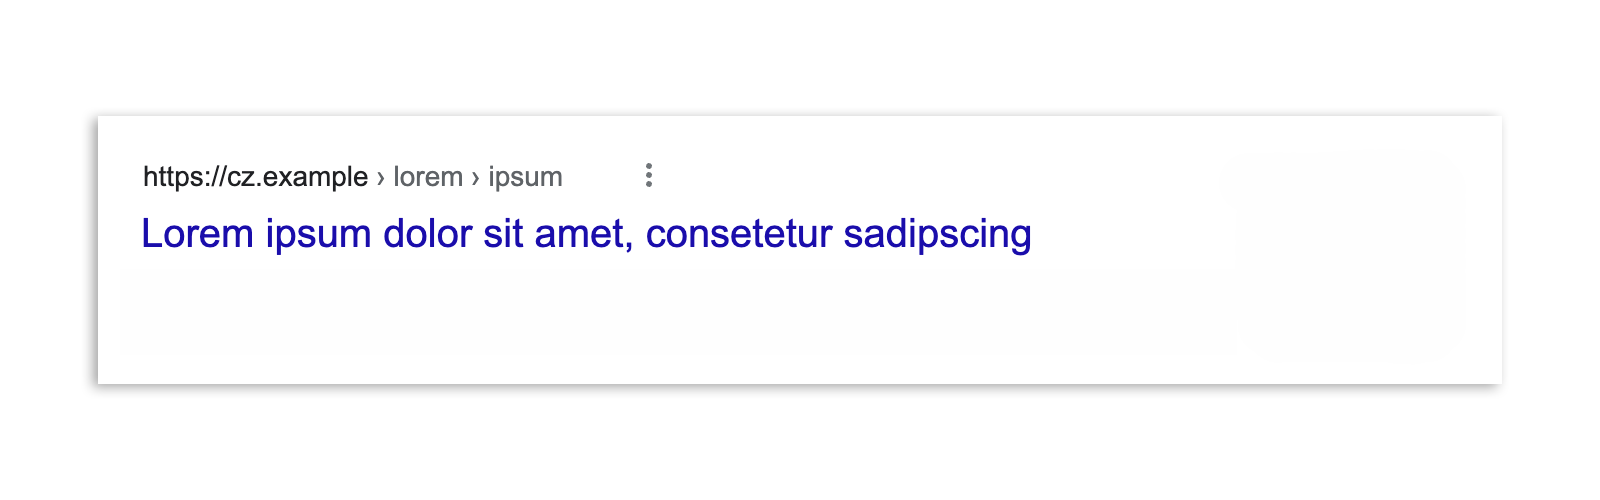 Результат поиска Google в Чехии после принятия закона, который показывает только заголовок статьи и URL-адрес.